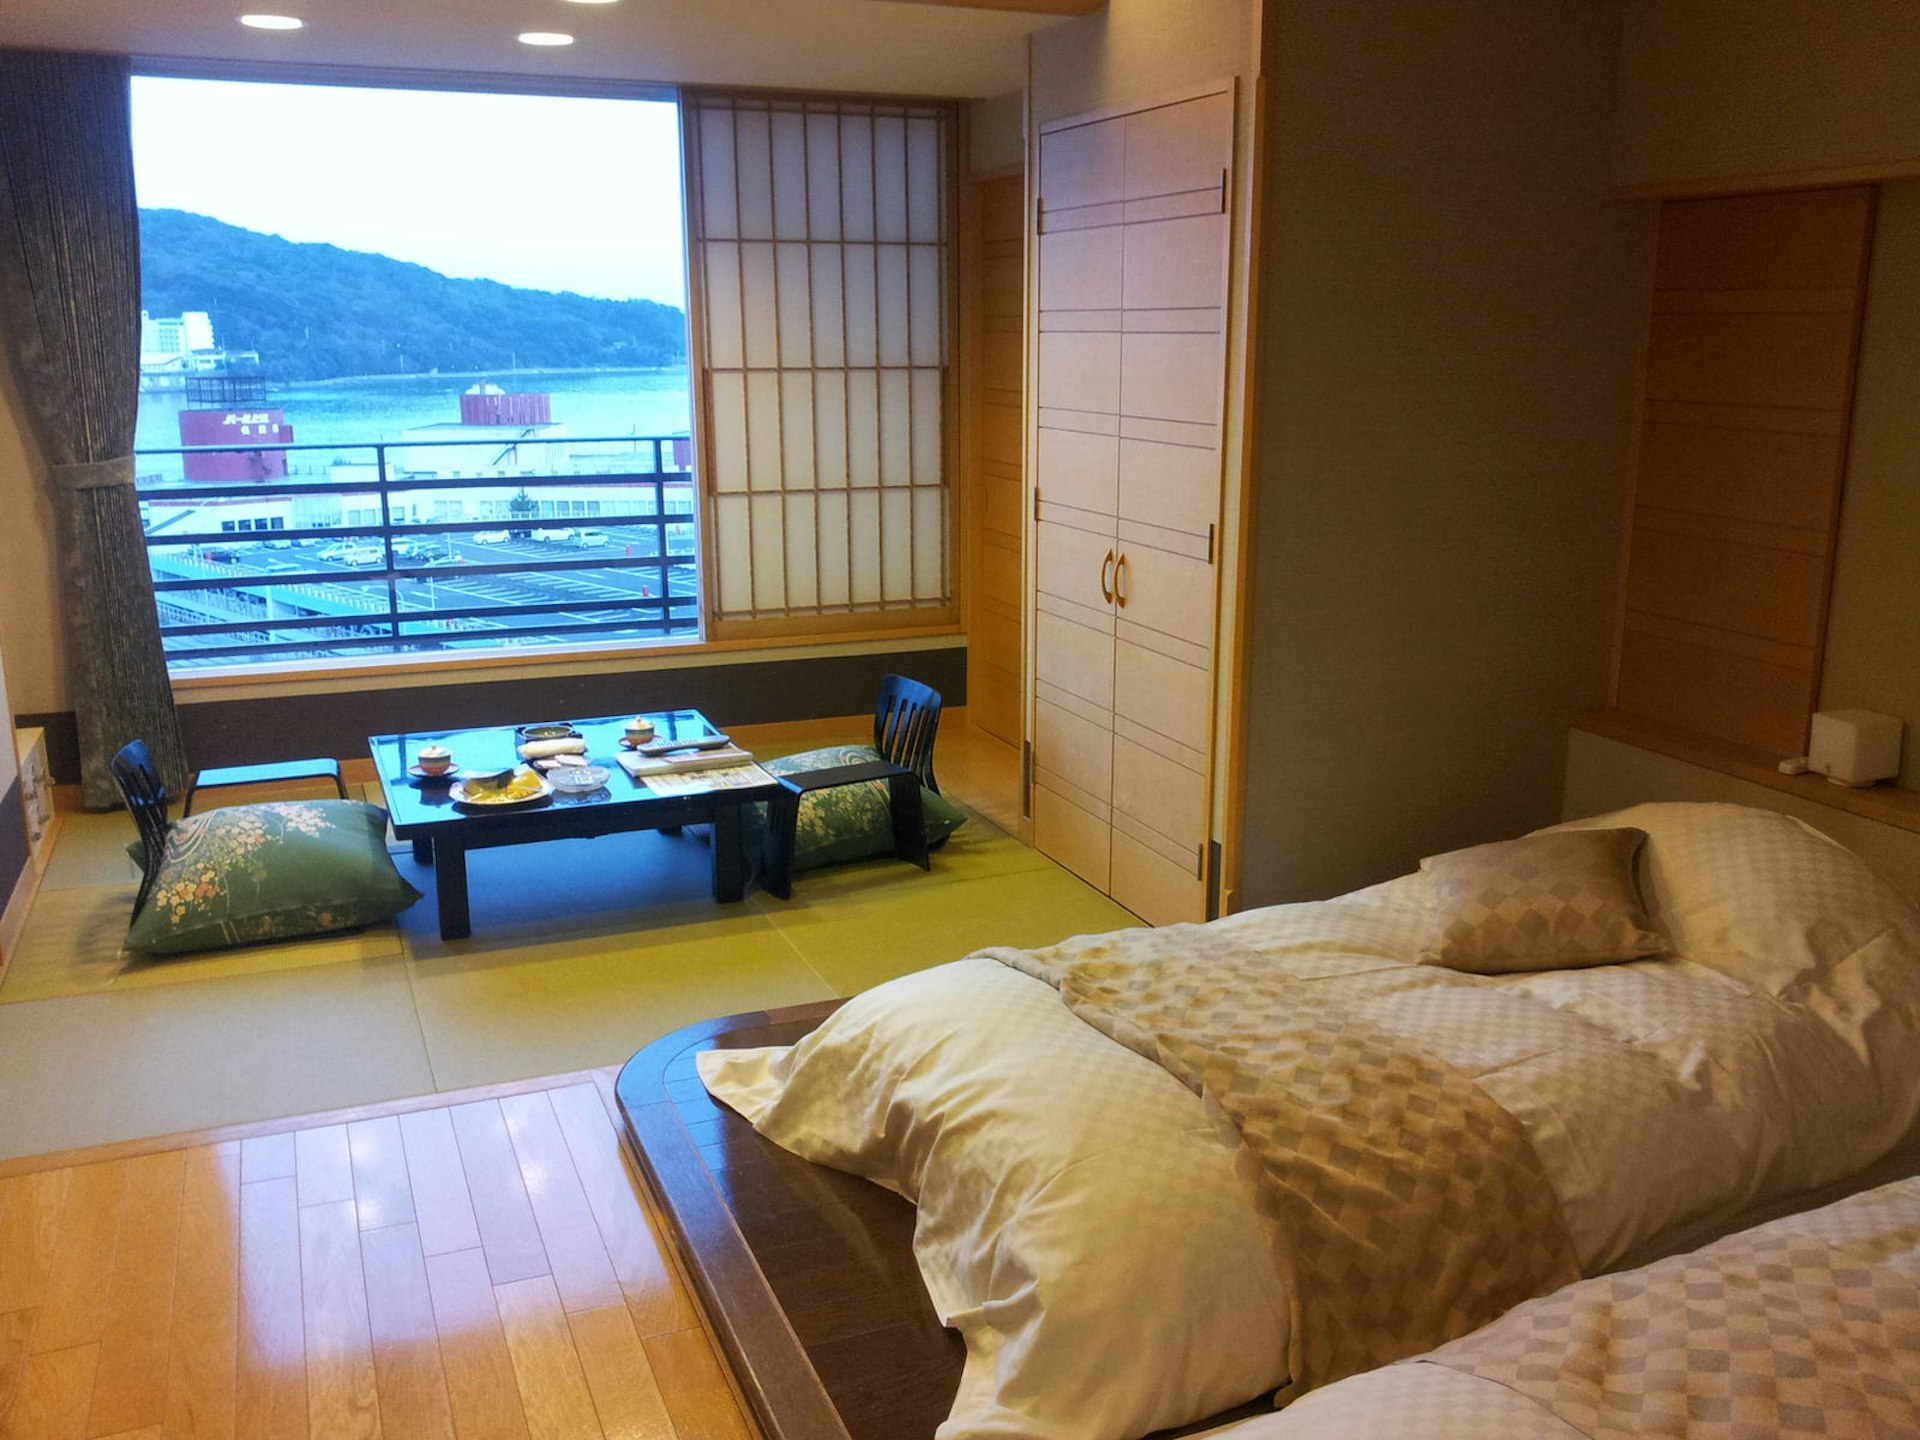 Room with a sea view at Todaya, Toba